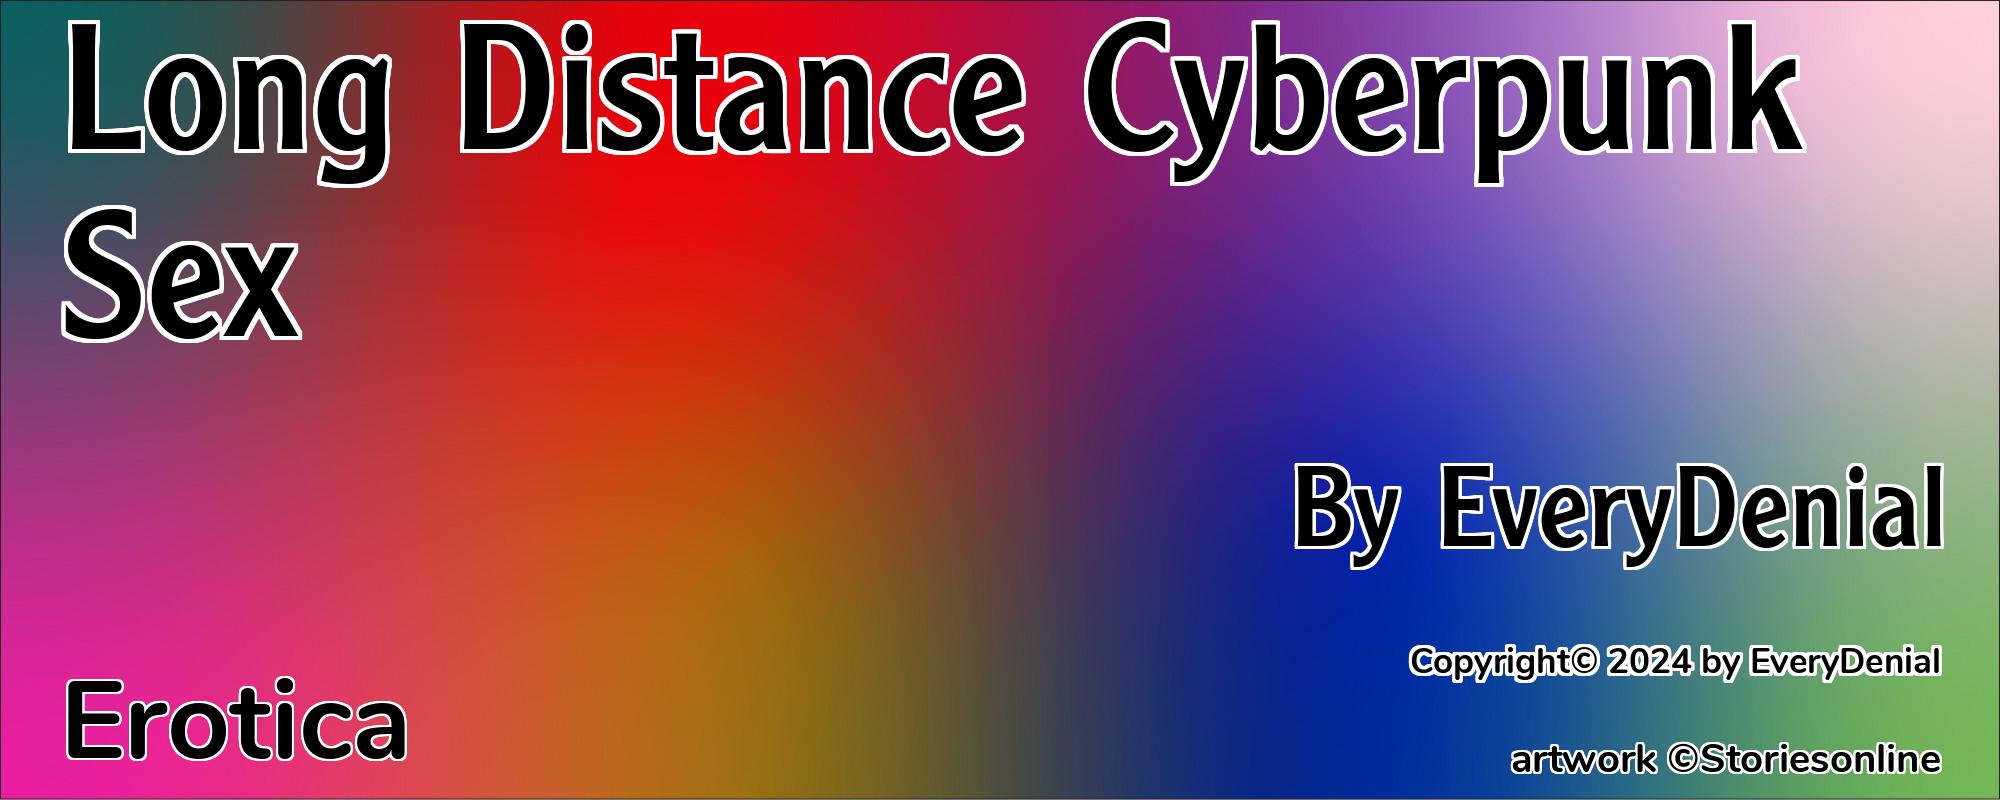 Long Distance Cyberpunk Sex - Cover